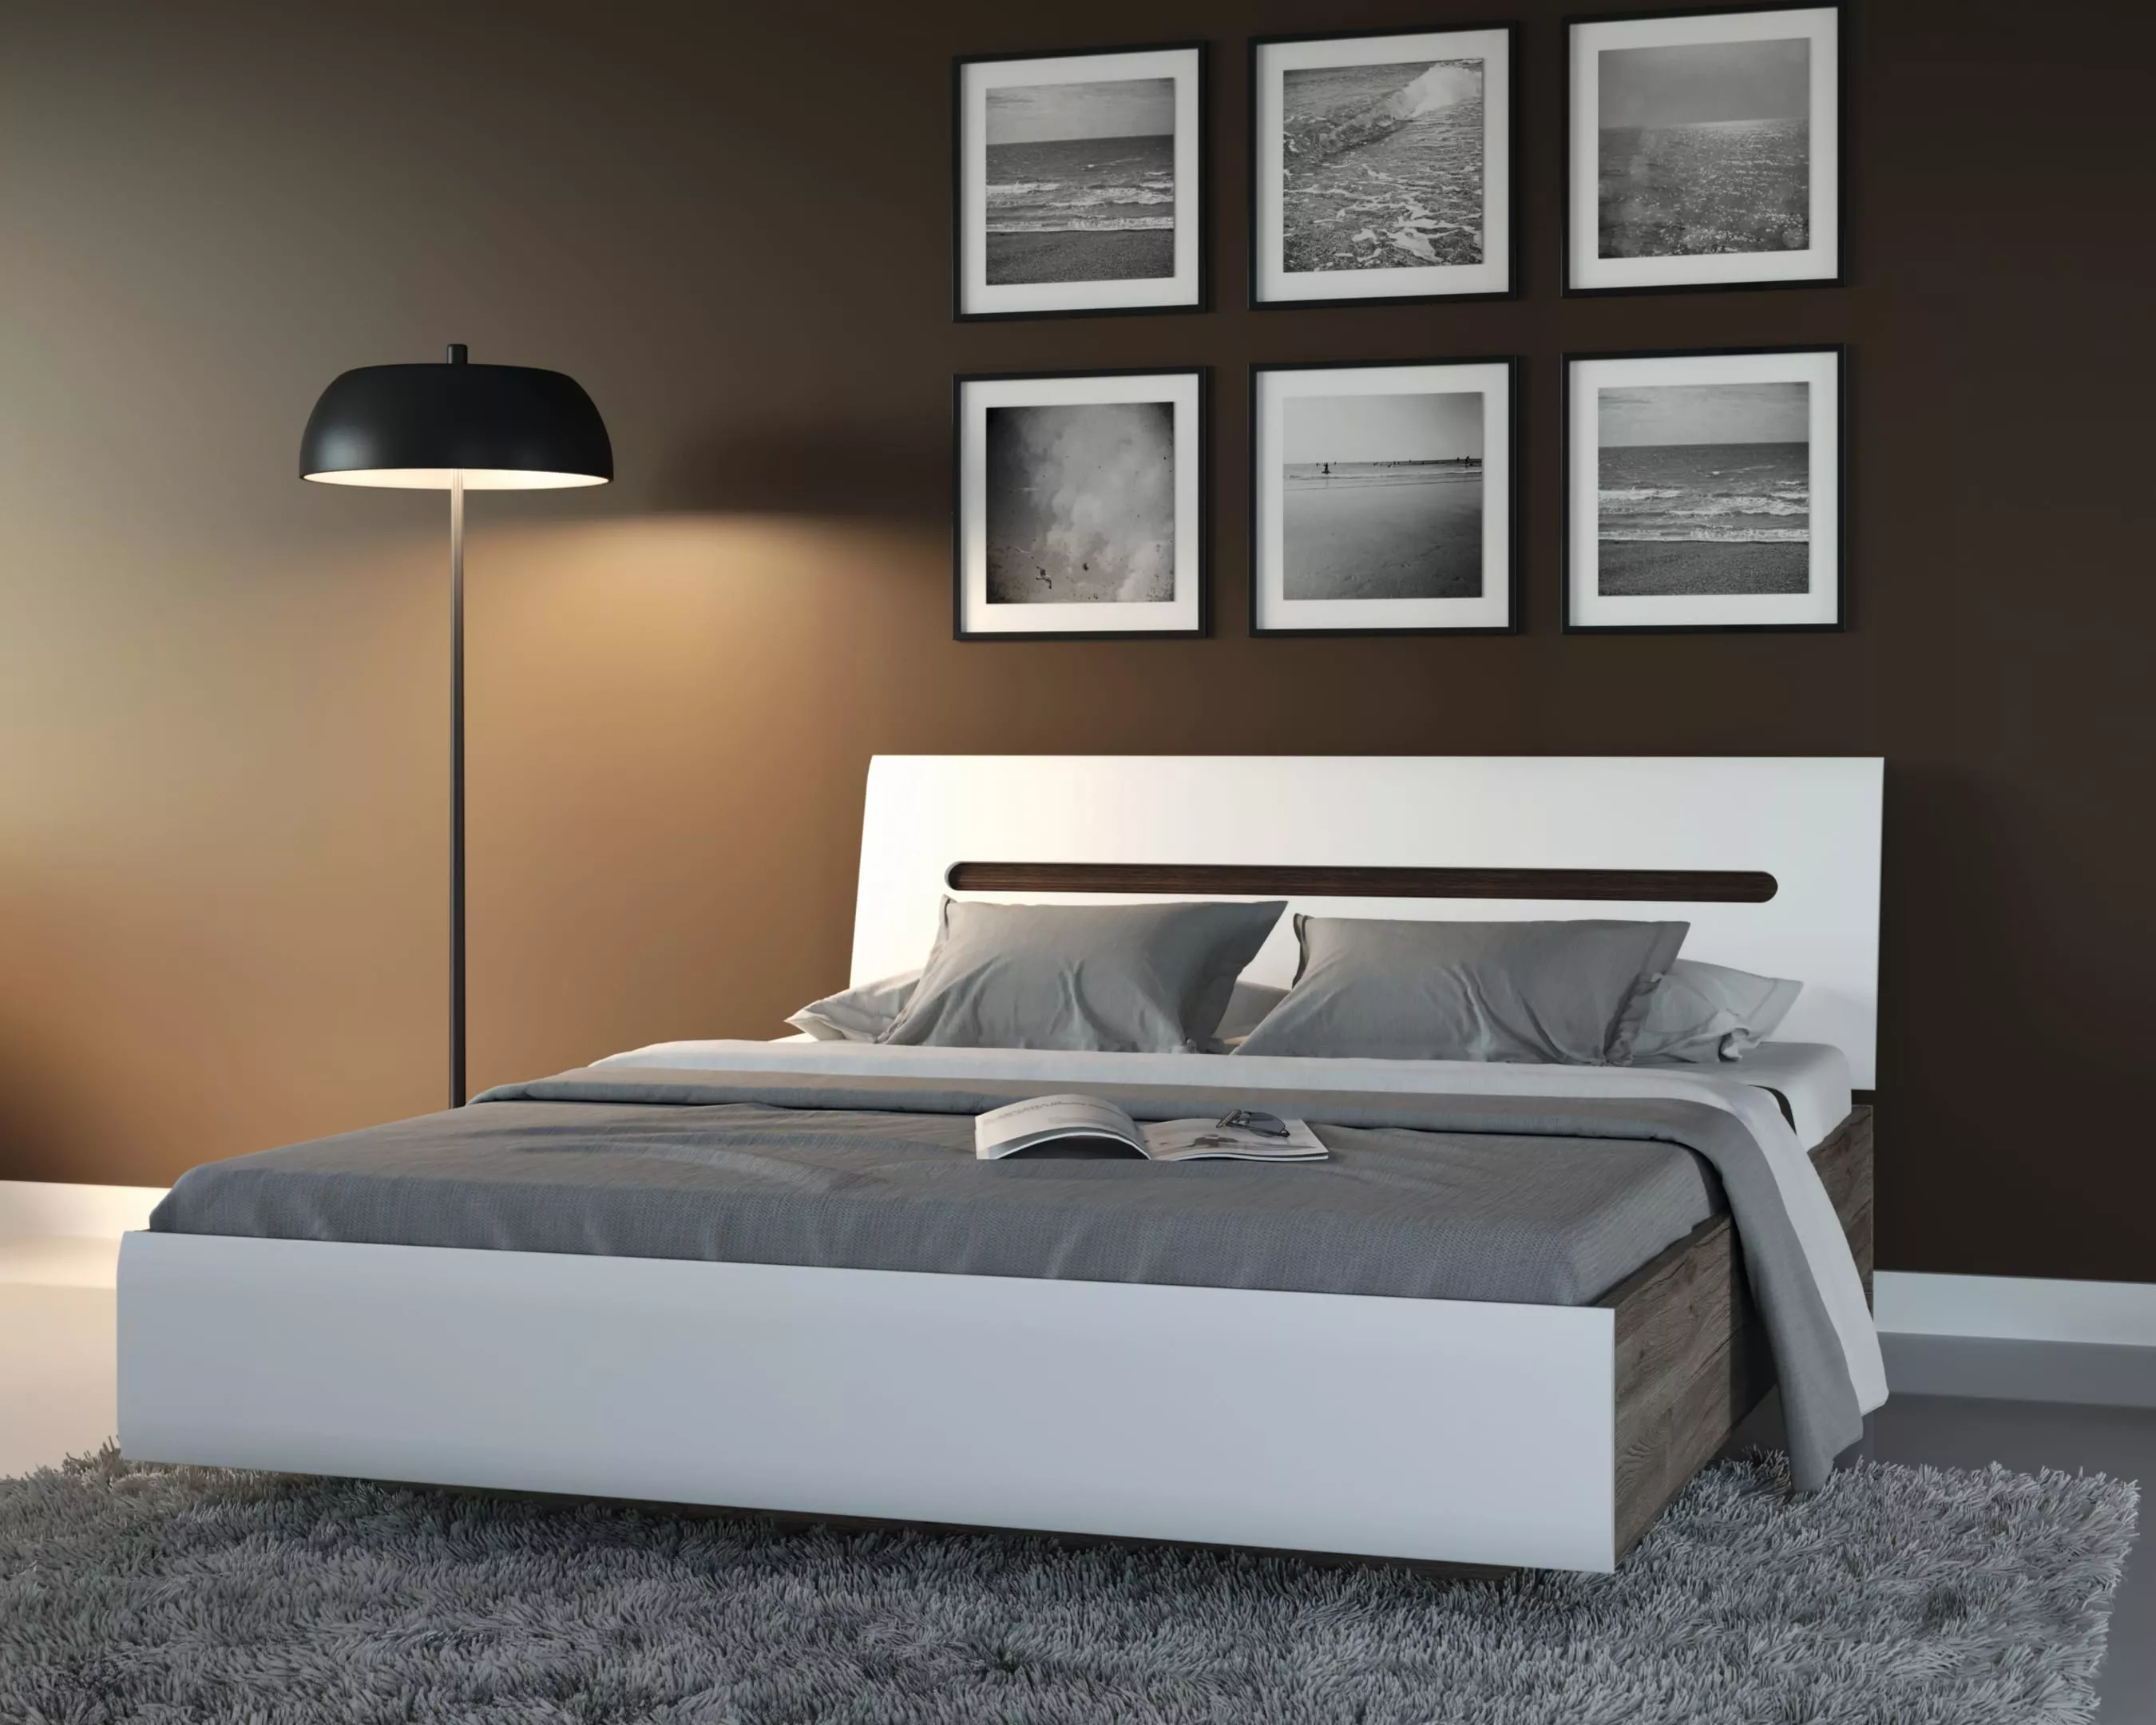 Спальня | Кровати | АЦТЕКА Кровать LOZ180x200 (Белый блеск) Мебель ☆ IDEA в Севастополе| BRW, Брест anons